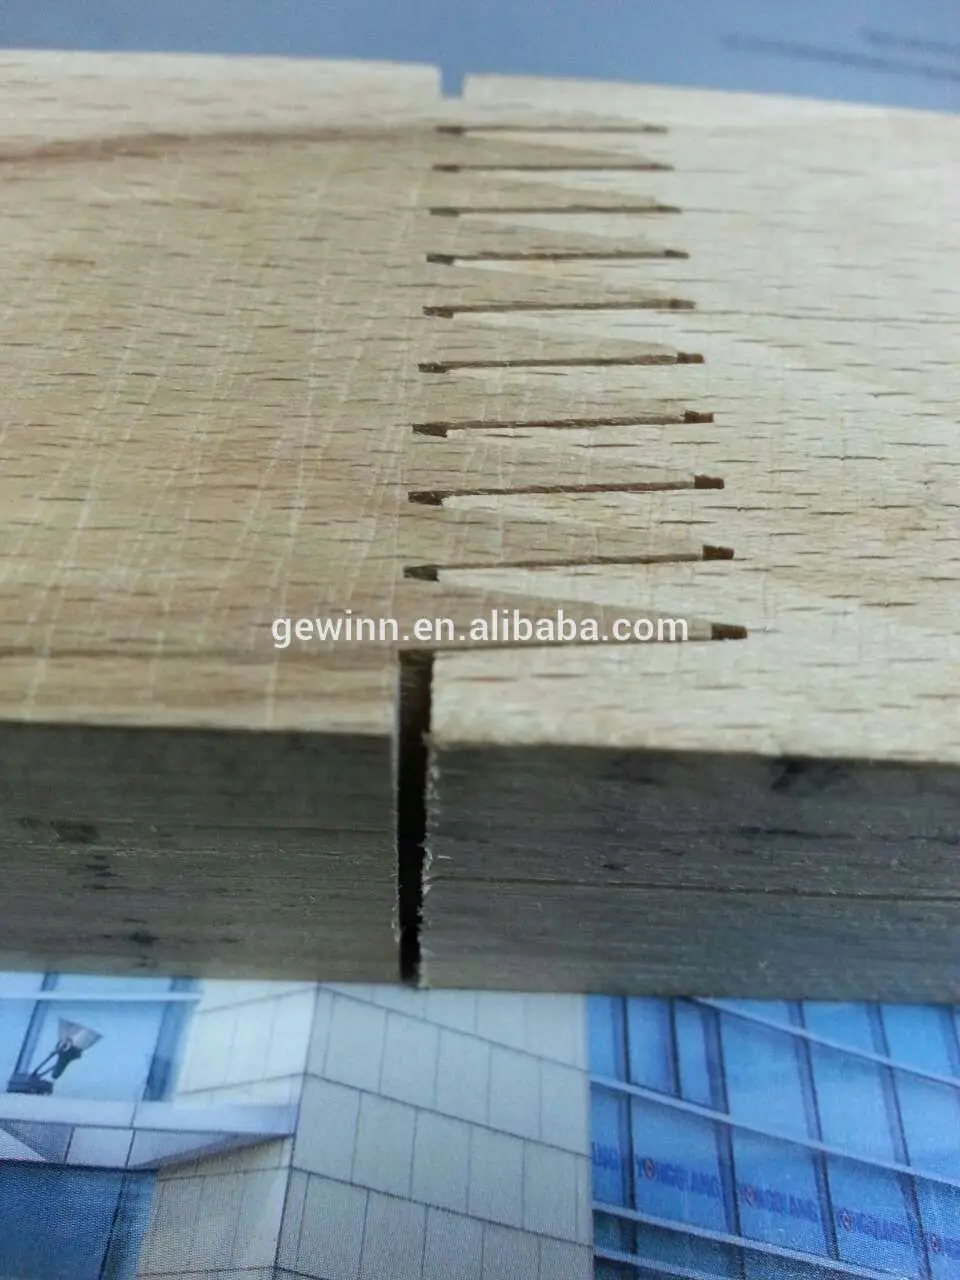 Gewinn Brand wood chinese heads industrial woodworking tools